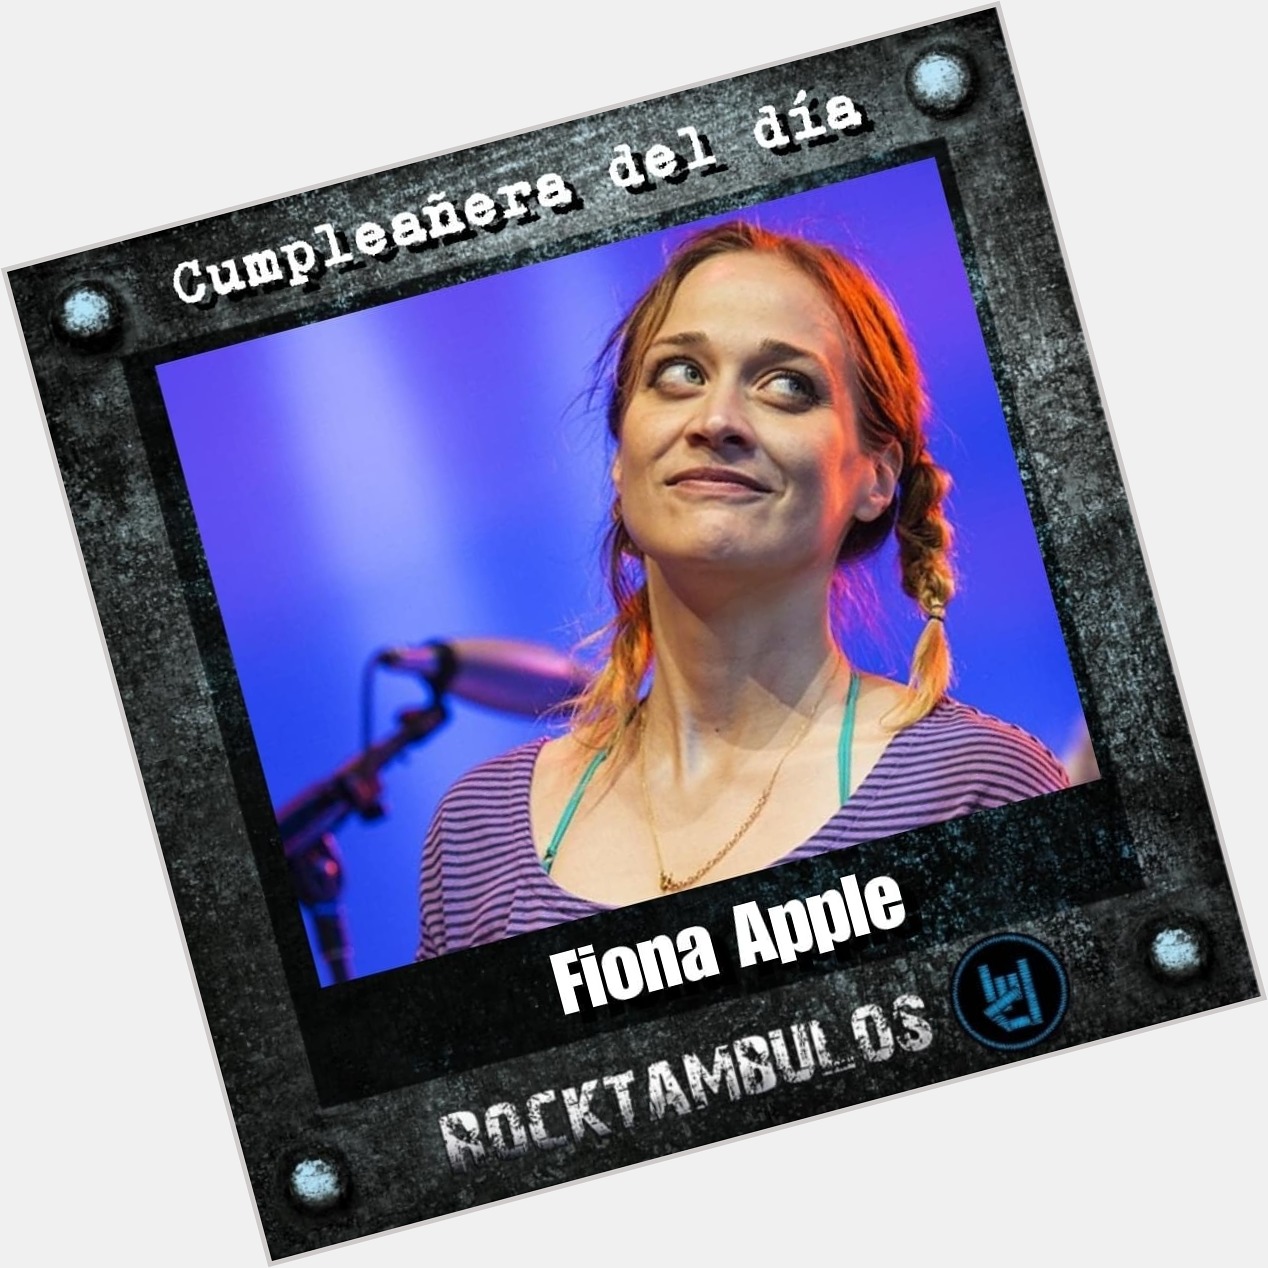 La talentosa Fiona Apple está de cumpleaños el día de hoy Happy birthday Fiona  